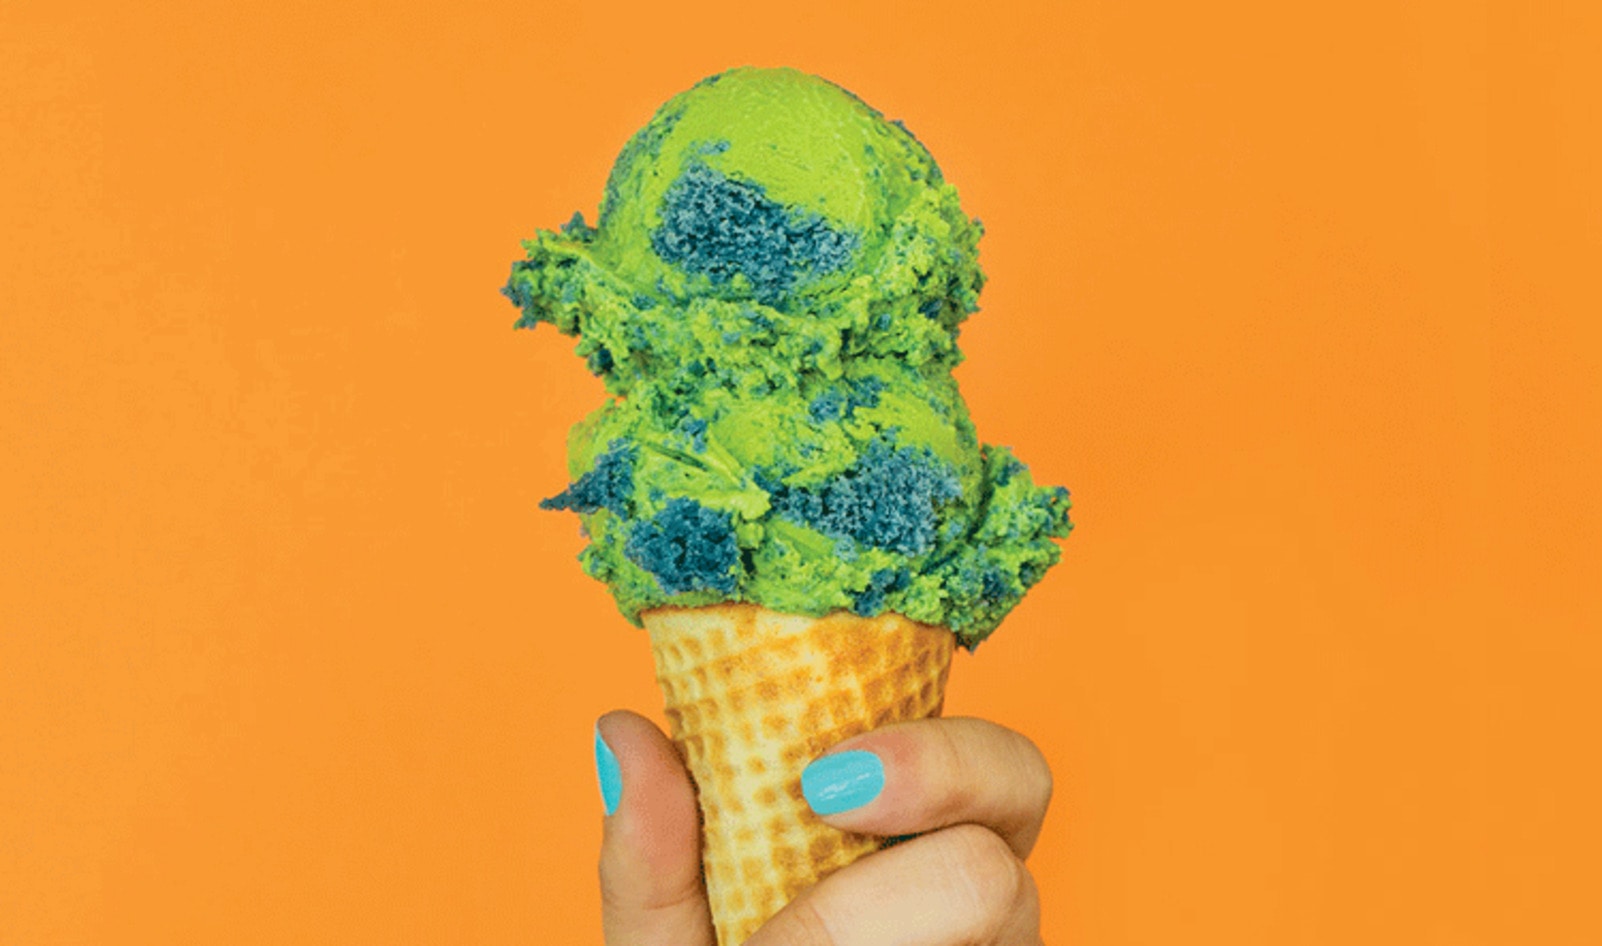 Van Leeuwen Debuts Vegan “Green Planet” Matcha Ice Cream